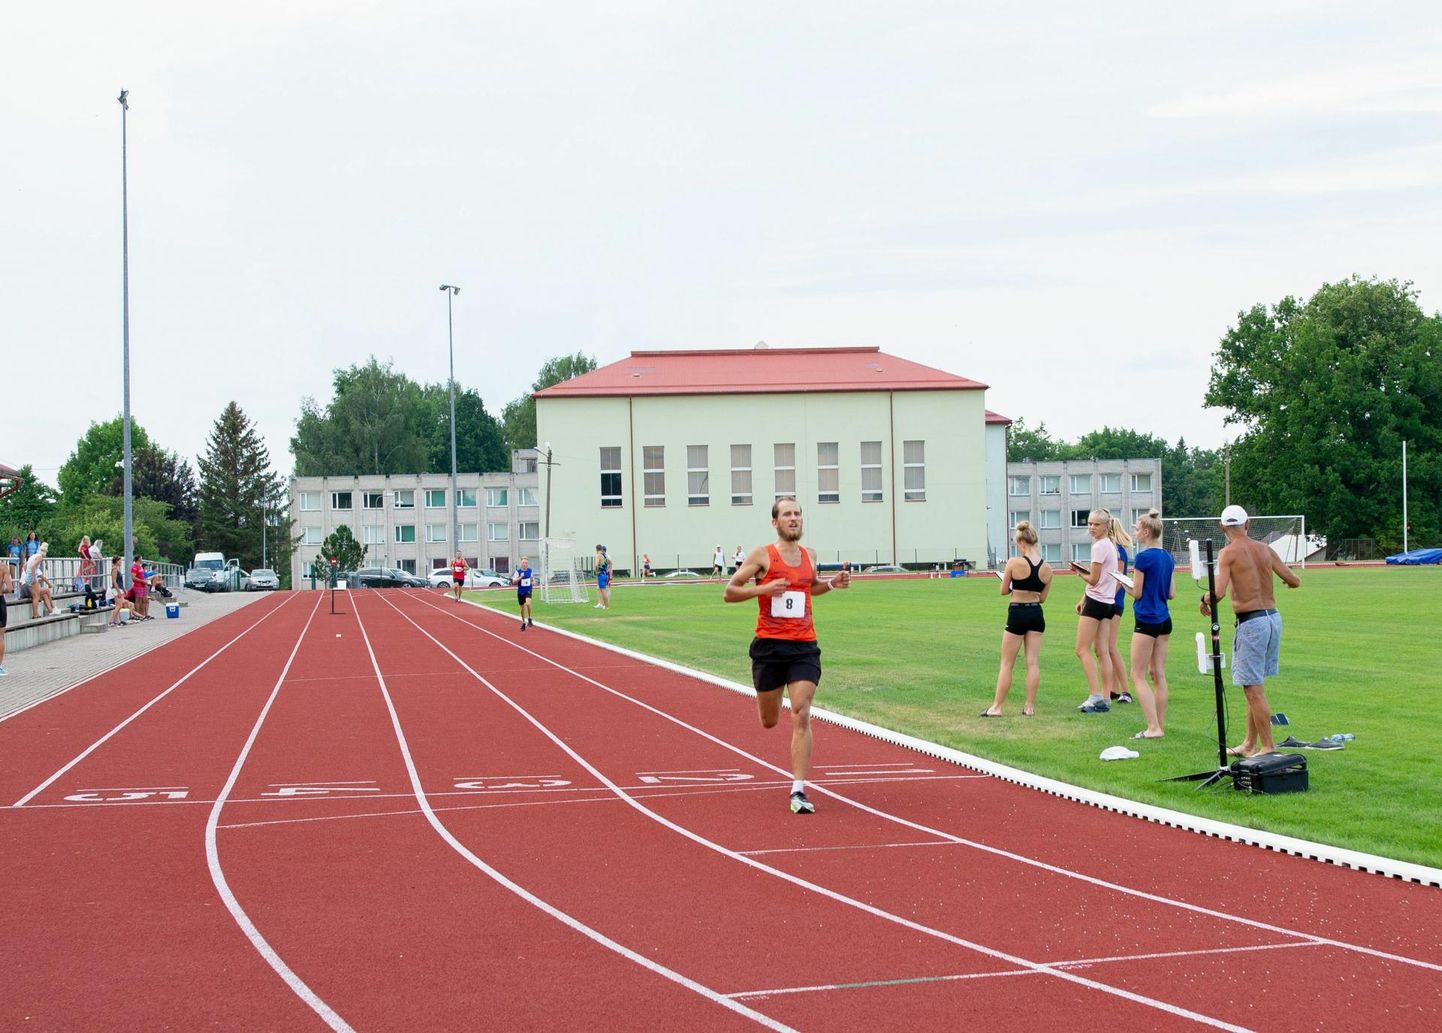 Karksi-Nuia spordikool tegutseb Kitzbergi gümnaasiumi juures, kasutades kooli sportimisvõimalusi. Nüüd, kui spordikooli direktori ametikoht koondati, peaks ametisse saama spordijuht, kes rahvaspordi eestvedamise kõrval korraldab spordikooli tööd.